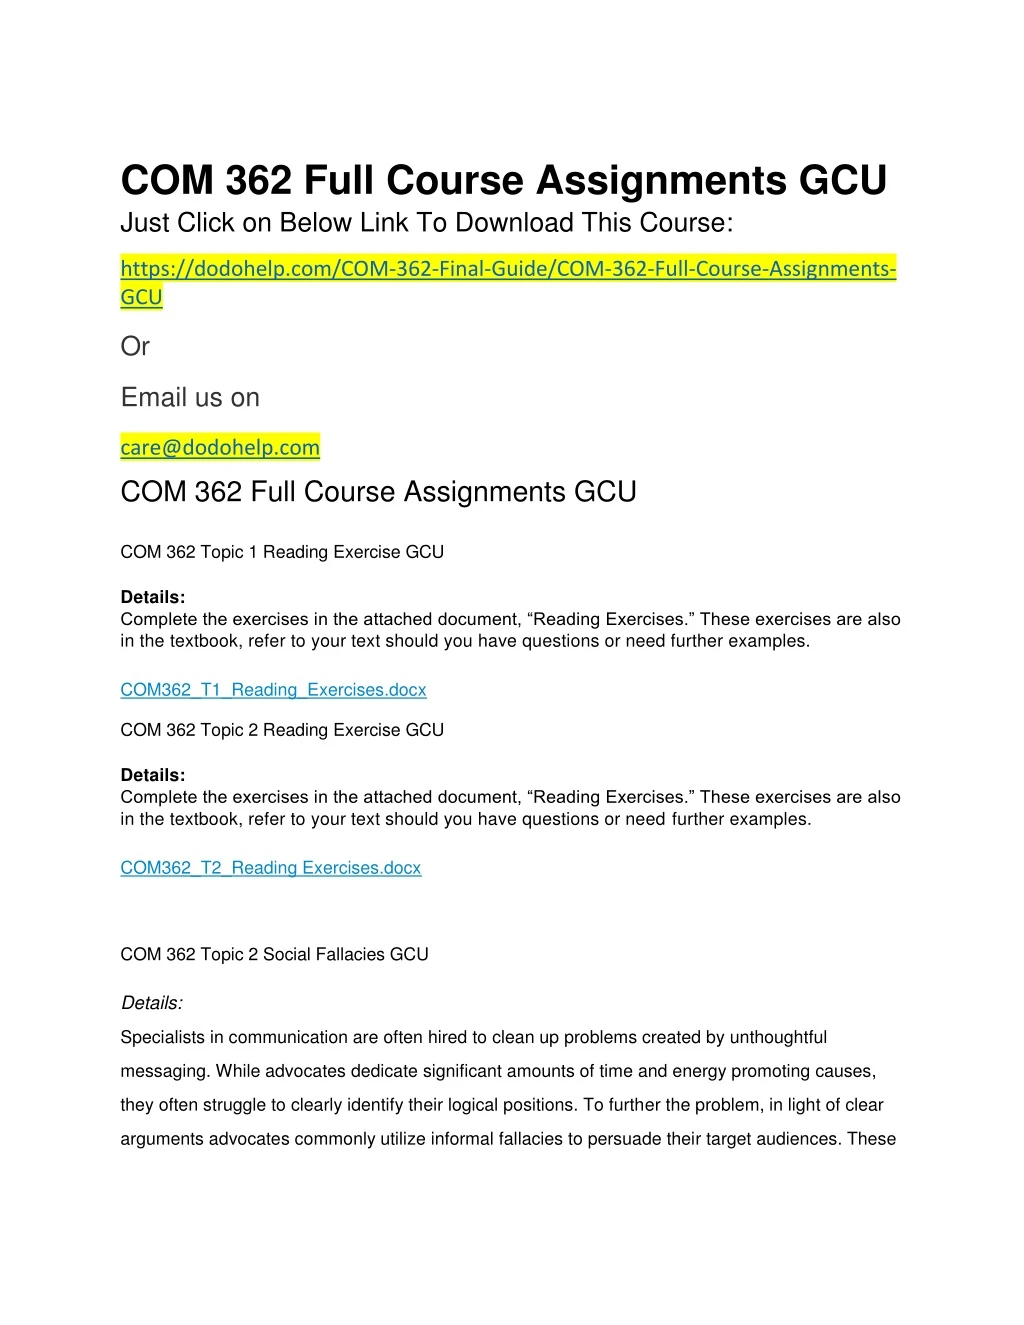 com 362 full course assignments gcu just click